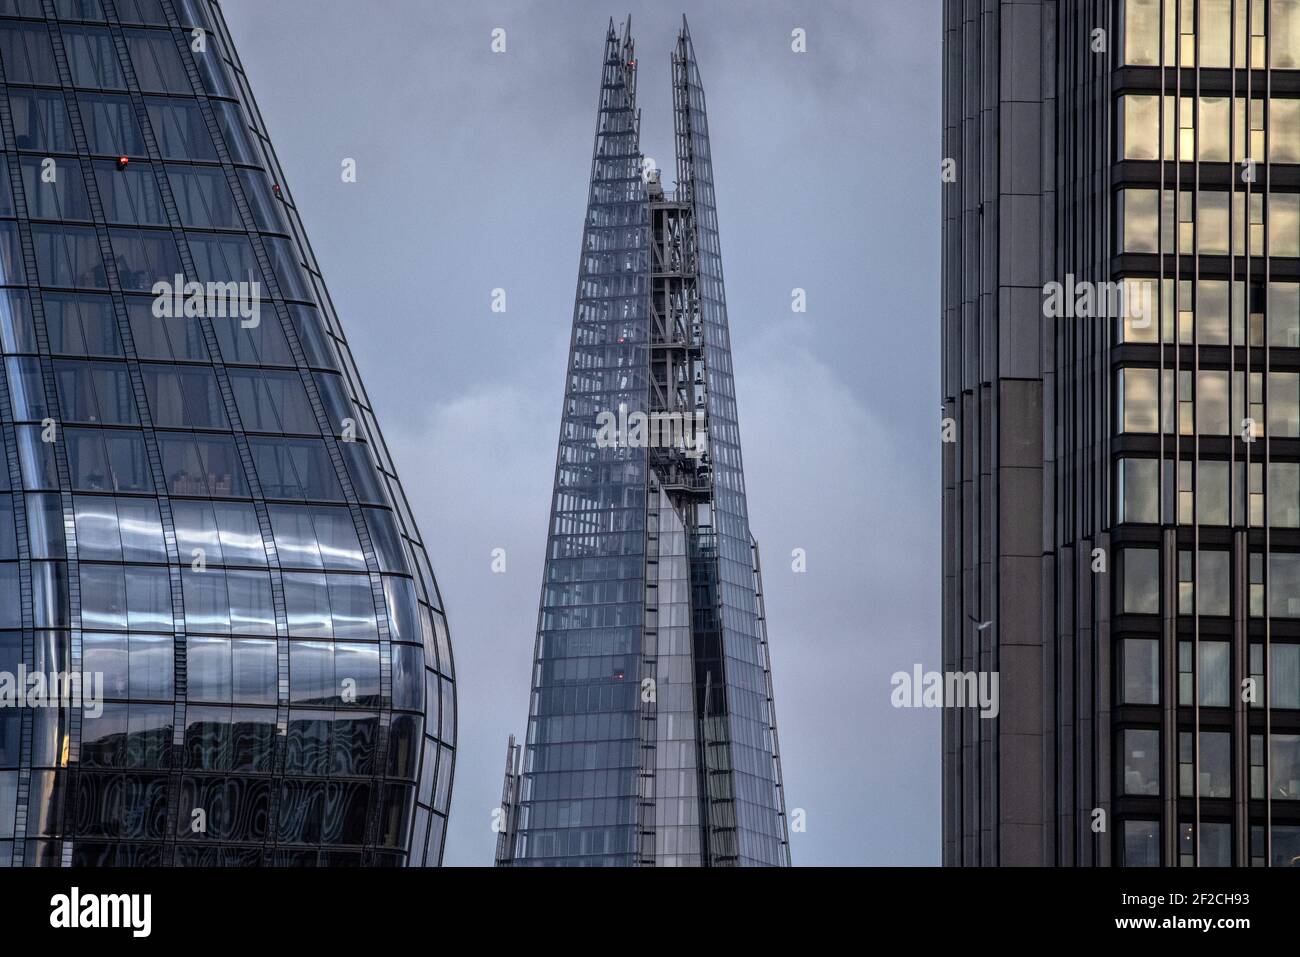 Londons ikonisches Shard-Gebäude steht neben anderen Londoner Wolkenkratzern in der Skyline der Hauptstadt, London, England, Großbritannien Stockfoto